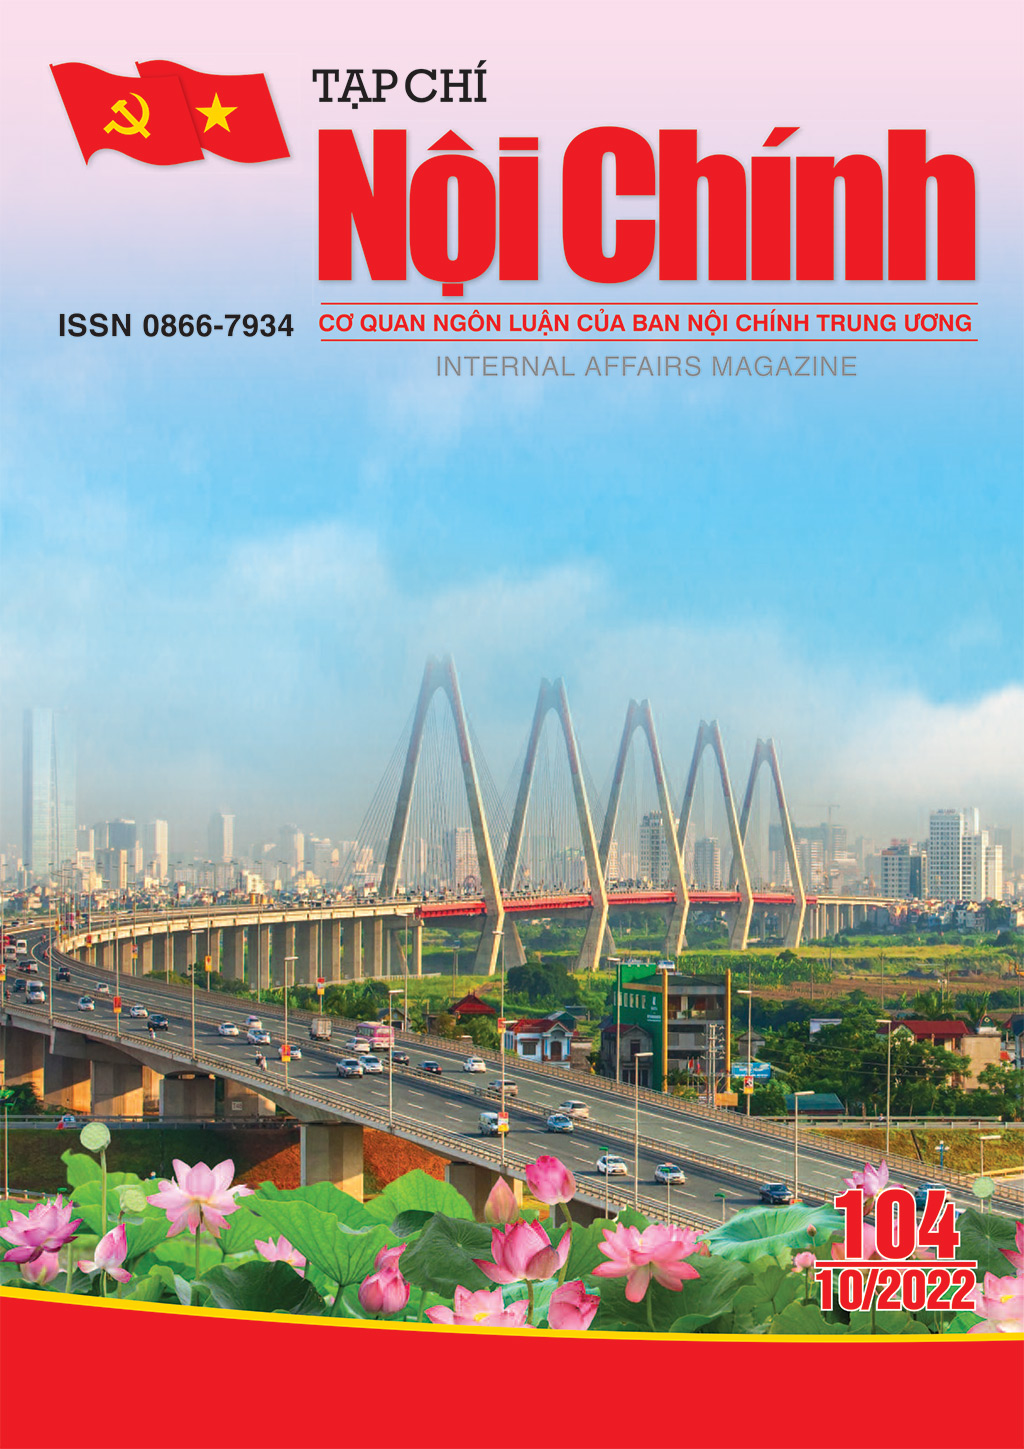 Giới thiệu Tạp chí Nội chính số 104 tháng 10 năm 2022